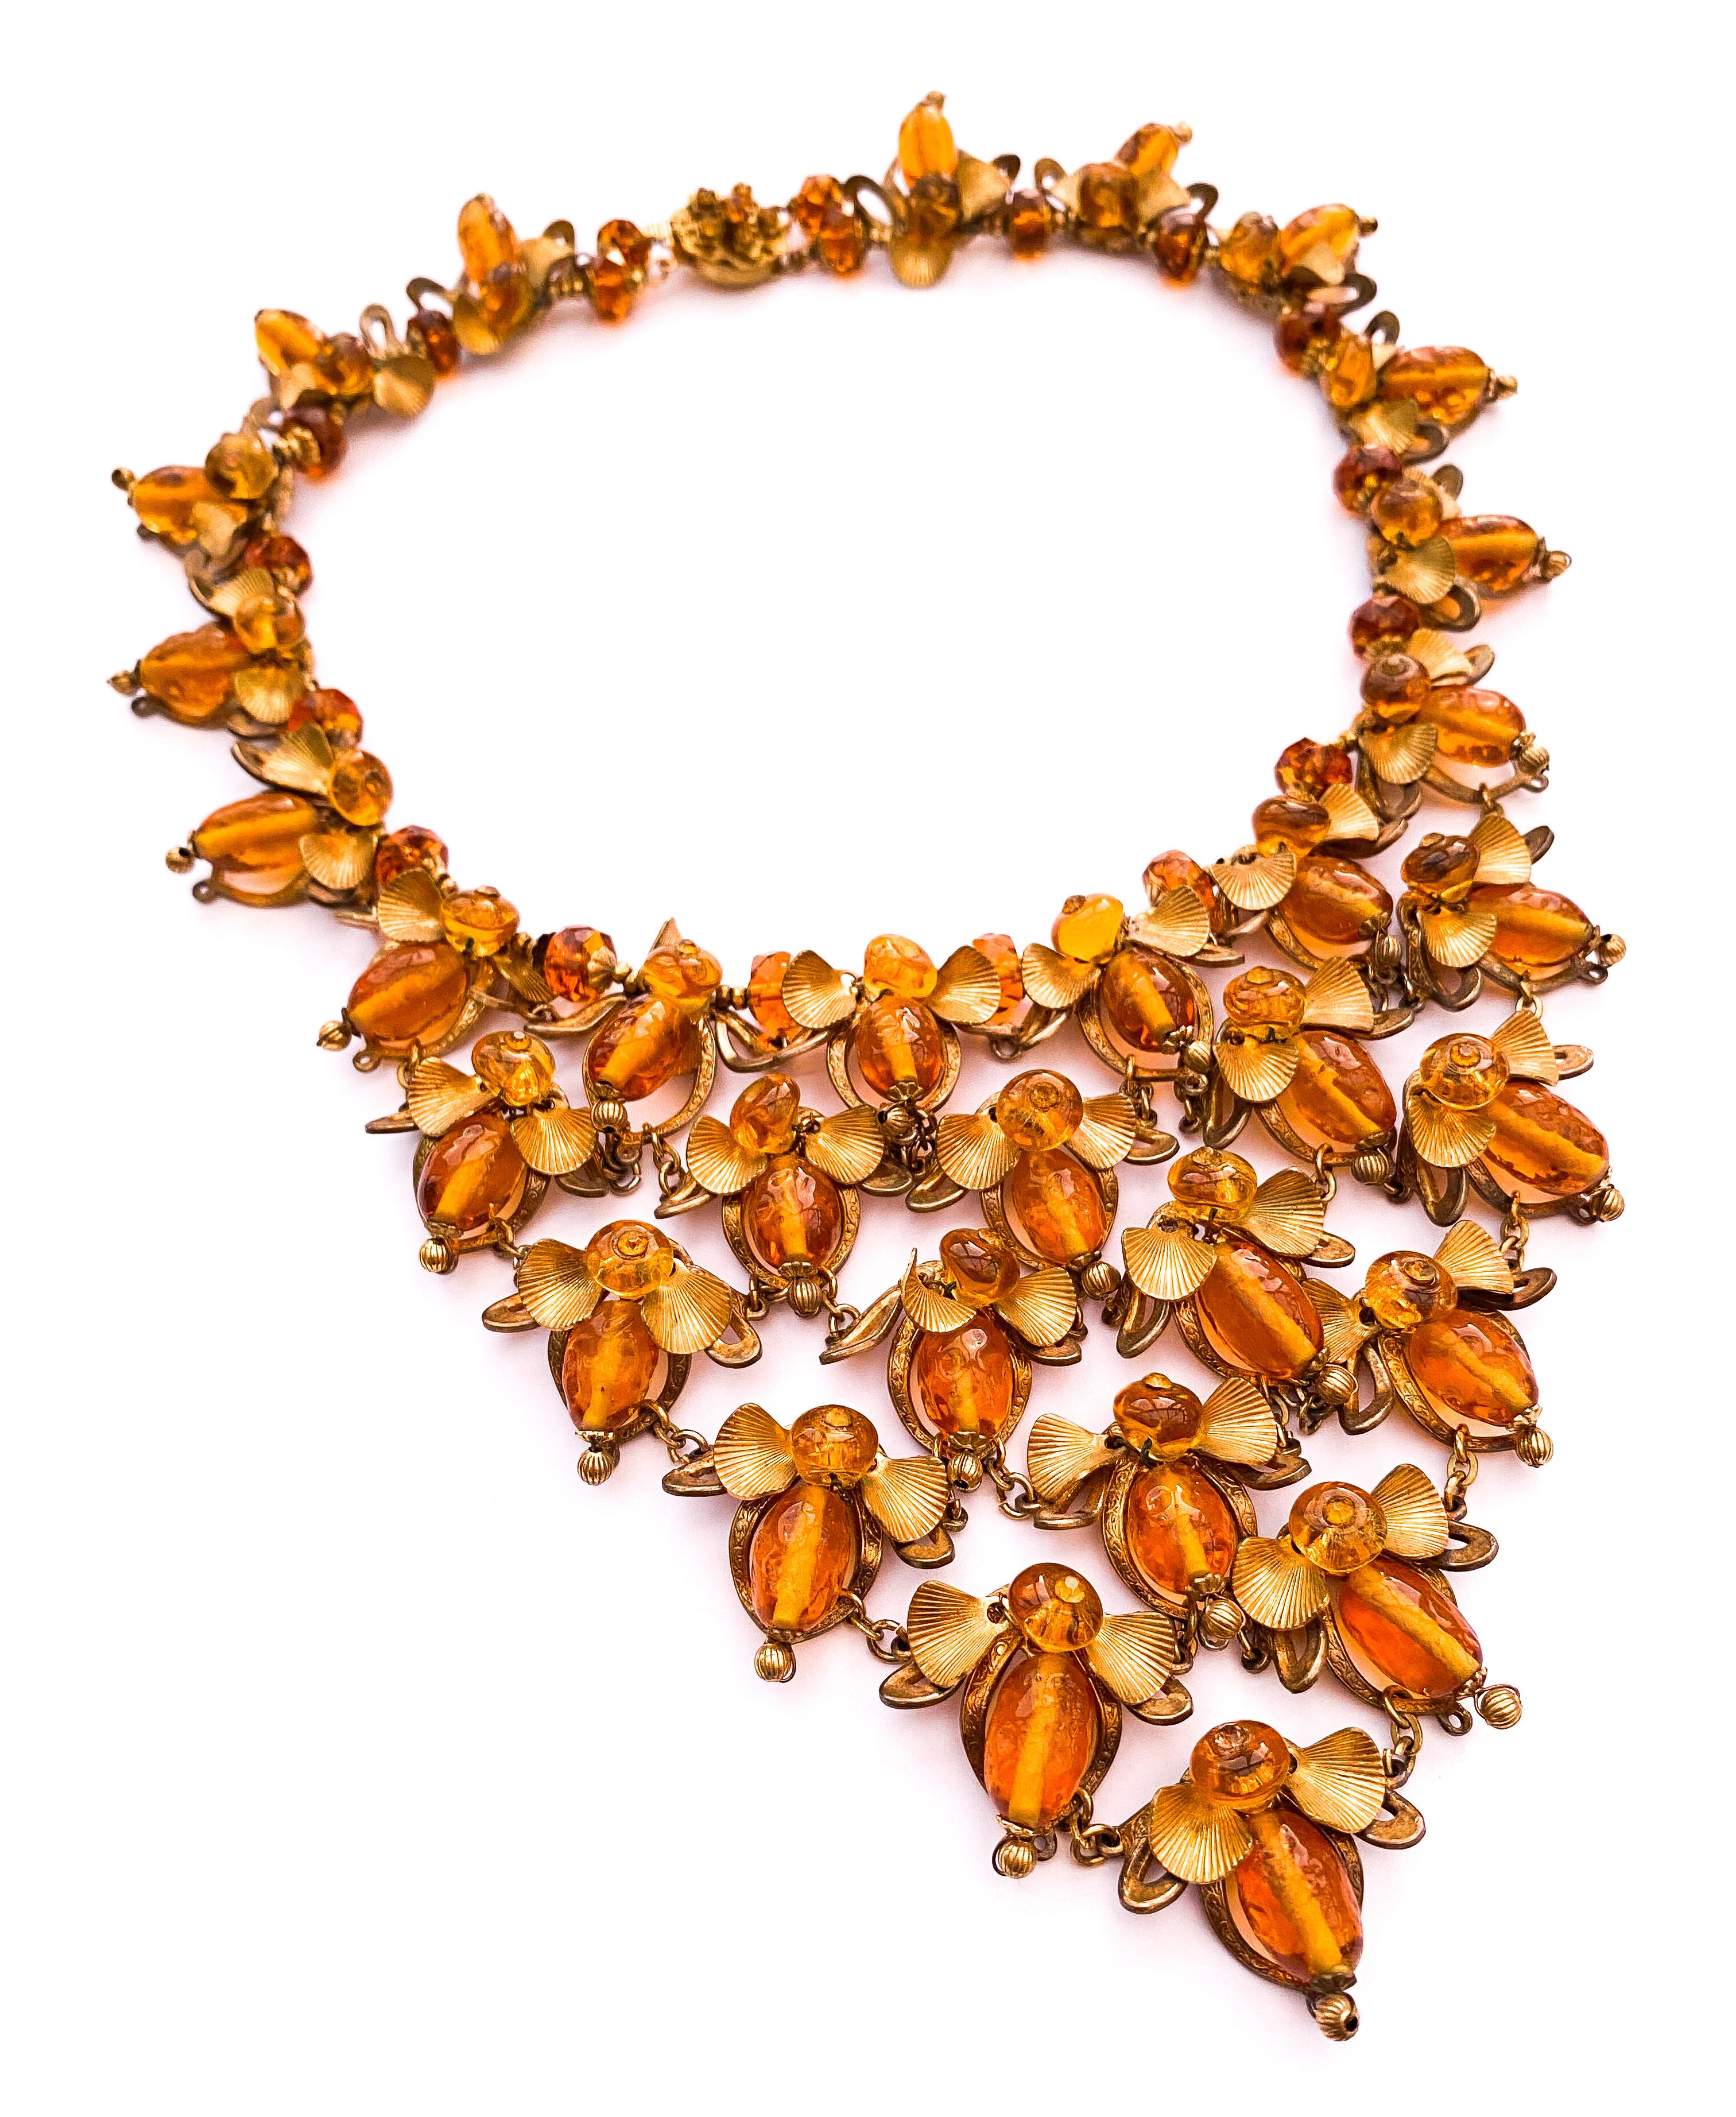 Un collier à bavette rare et de grande collection, une pièce exceptionnelle, conçue par Robert Clark pour Miriam Haskell, un design très imaginatif et très inhabituel, représentant des abeilles de la manière la plus créative qui soit. Les perles